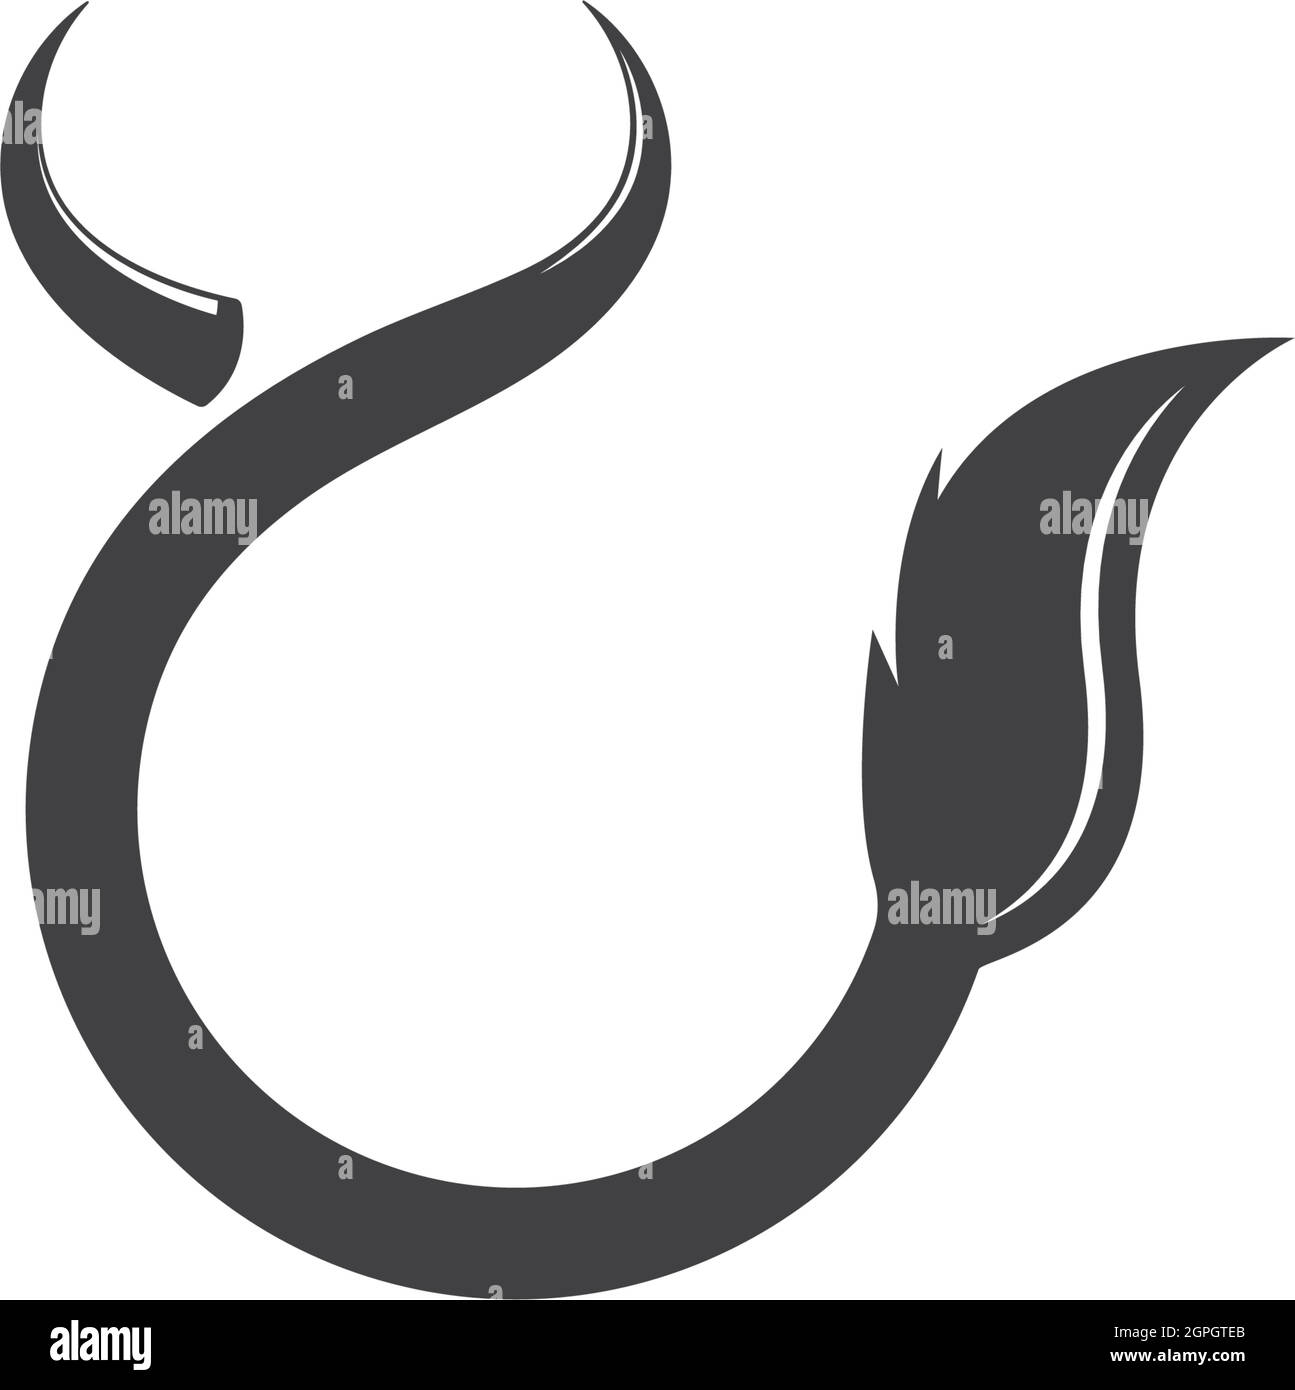 Vektorgrafik für das Cow Tail Logo Stock Vektor